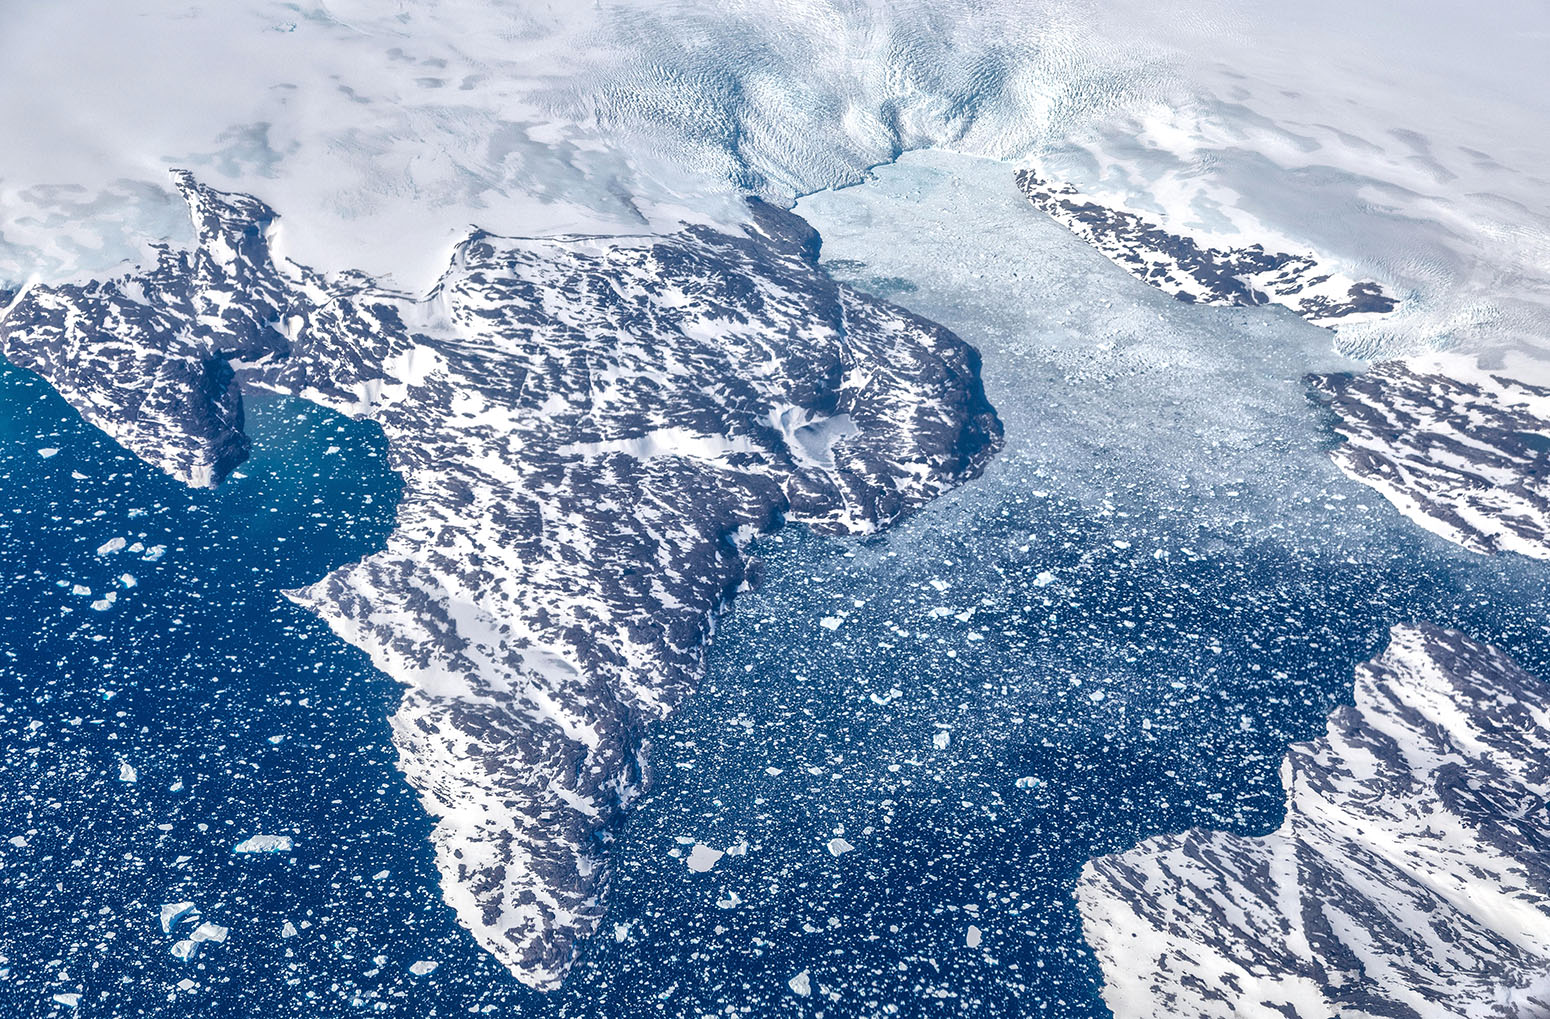 格陵兰冰盖的鸟瞰图。资料来源:Alireza Teimoury / Alamy Stock Photo。E59H97